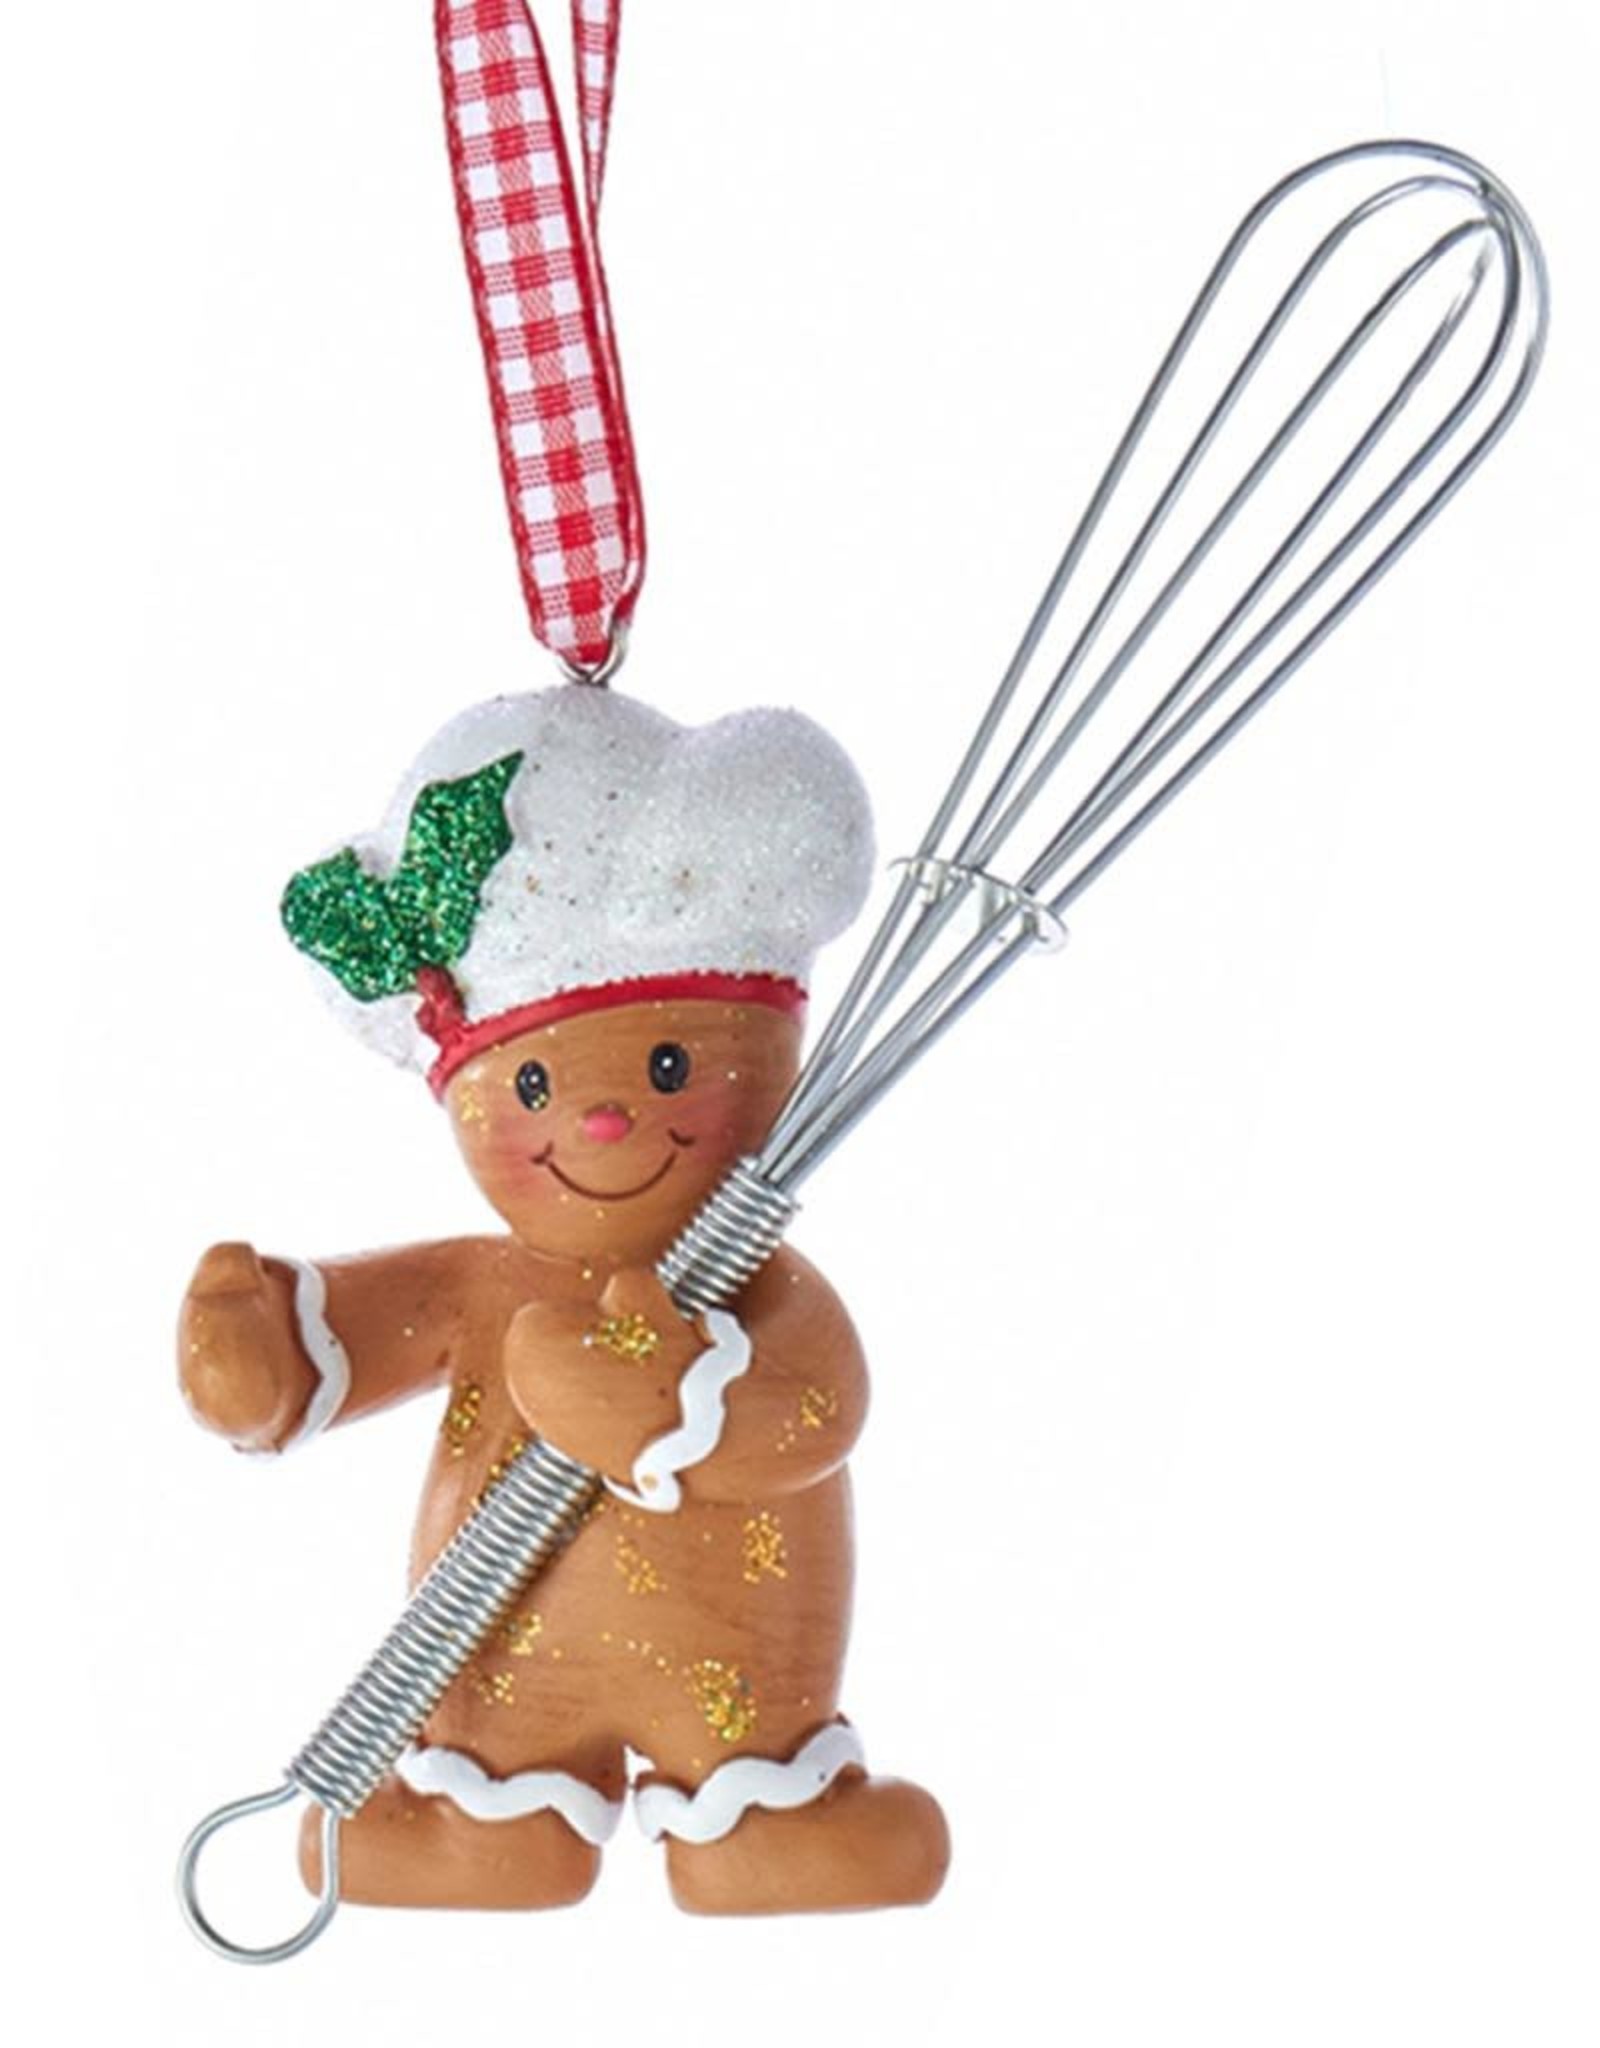 Kurt Adler Gingerbread Chef Boy Utensil Ornament Holding Whisk